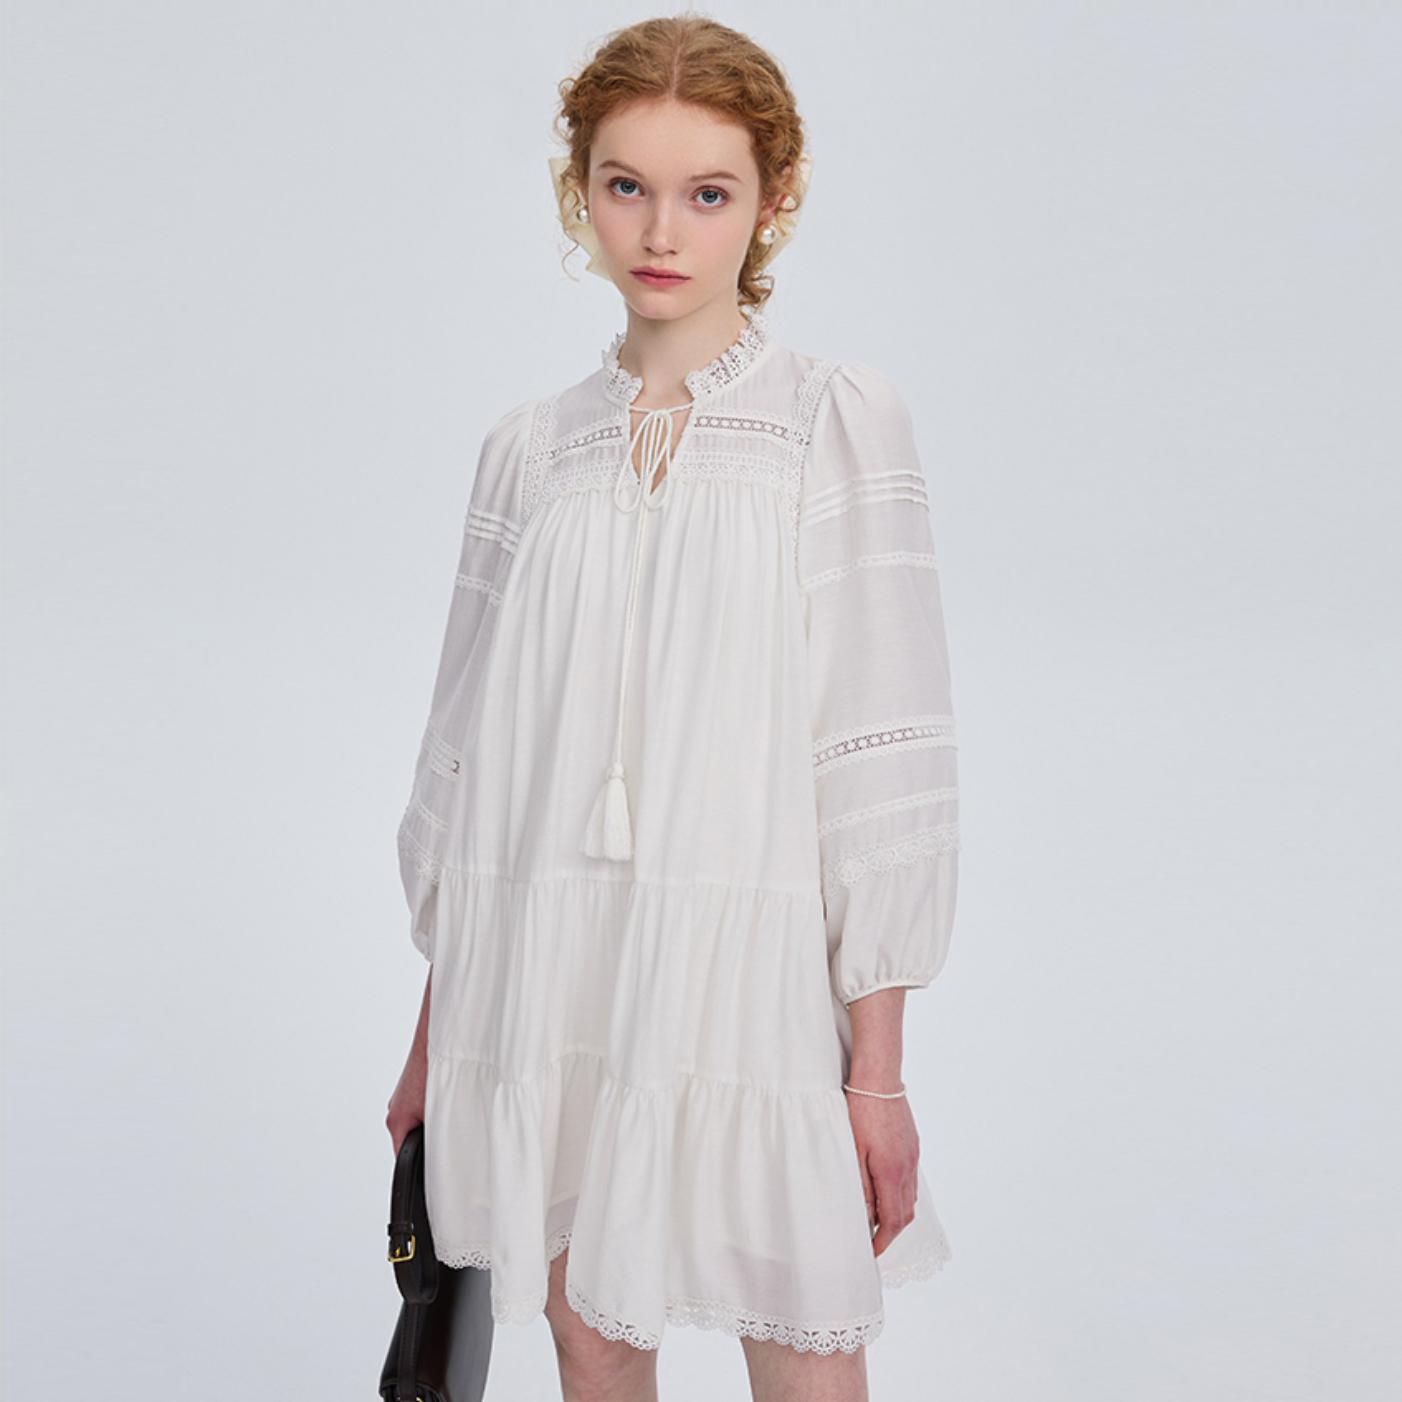 الفرنسية الأبيض تصميم قصير كم طويل فستان الدانتيل